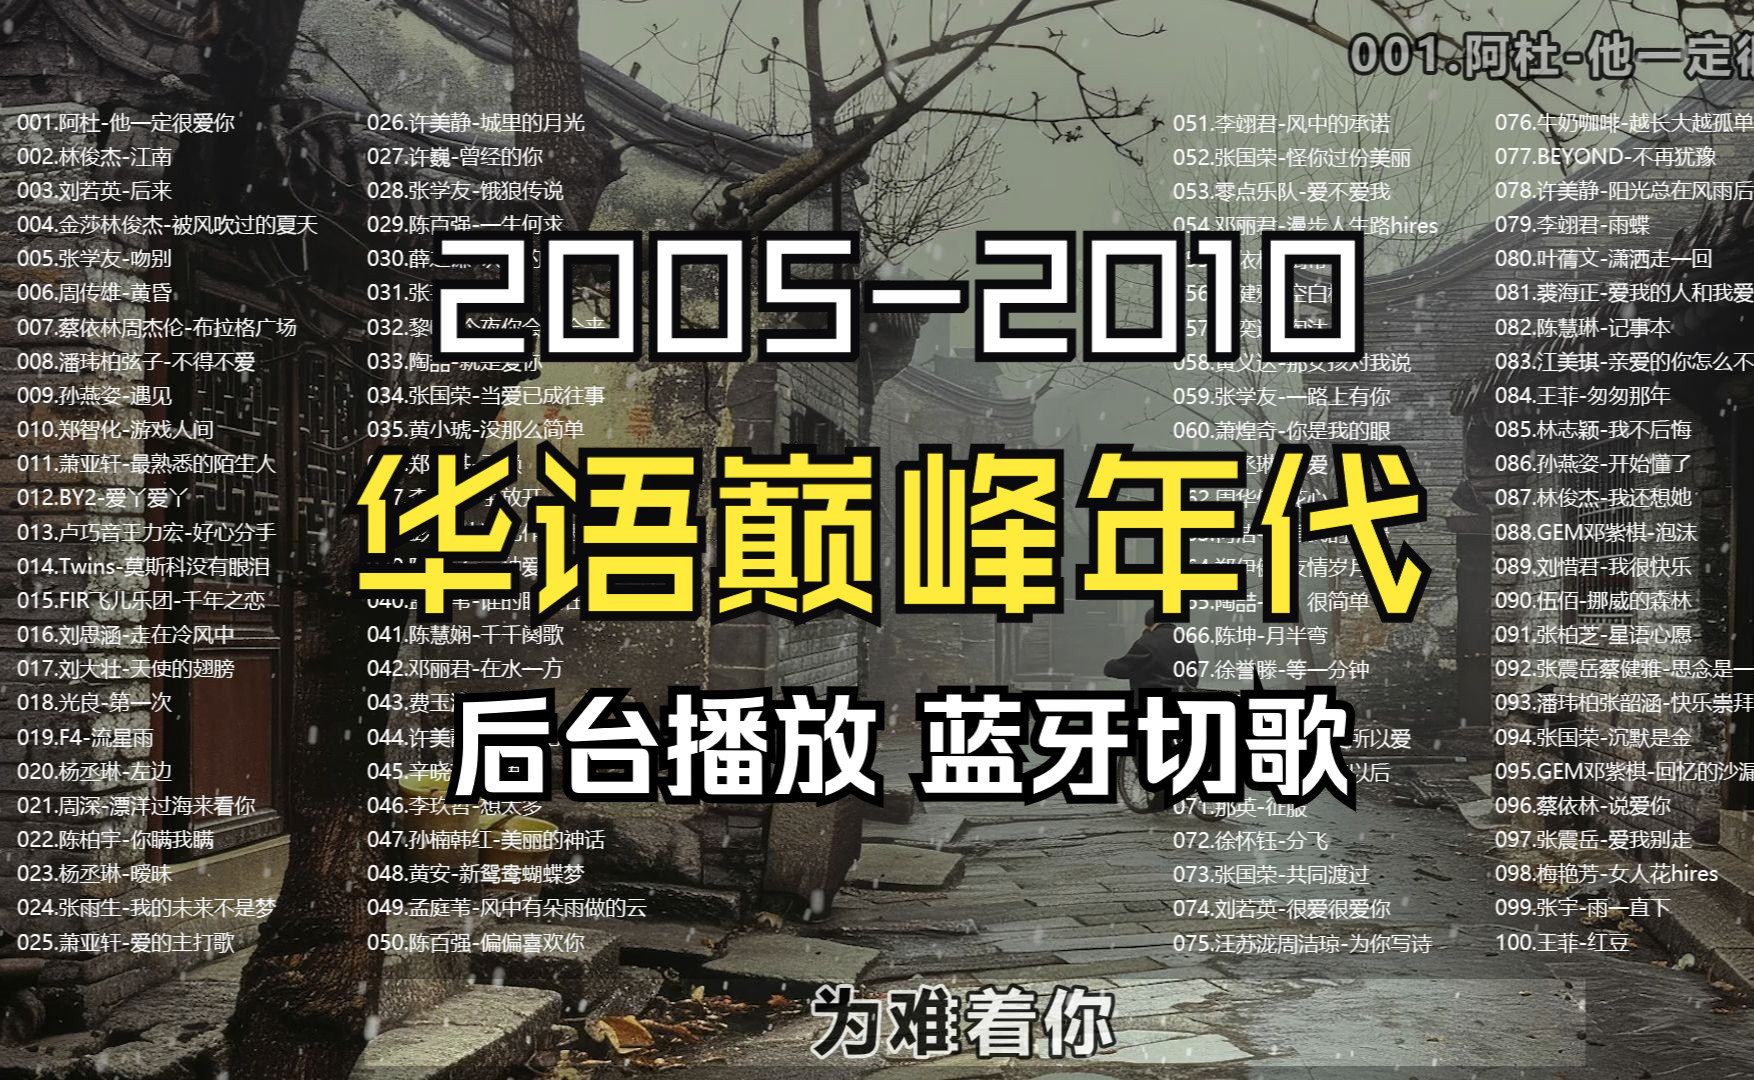 【华语巅峰2005-2010年代】152首歌曲大合集、分P播放、无损音质、带歌词(壁纸在评论区领取)